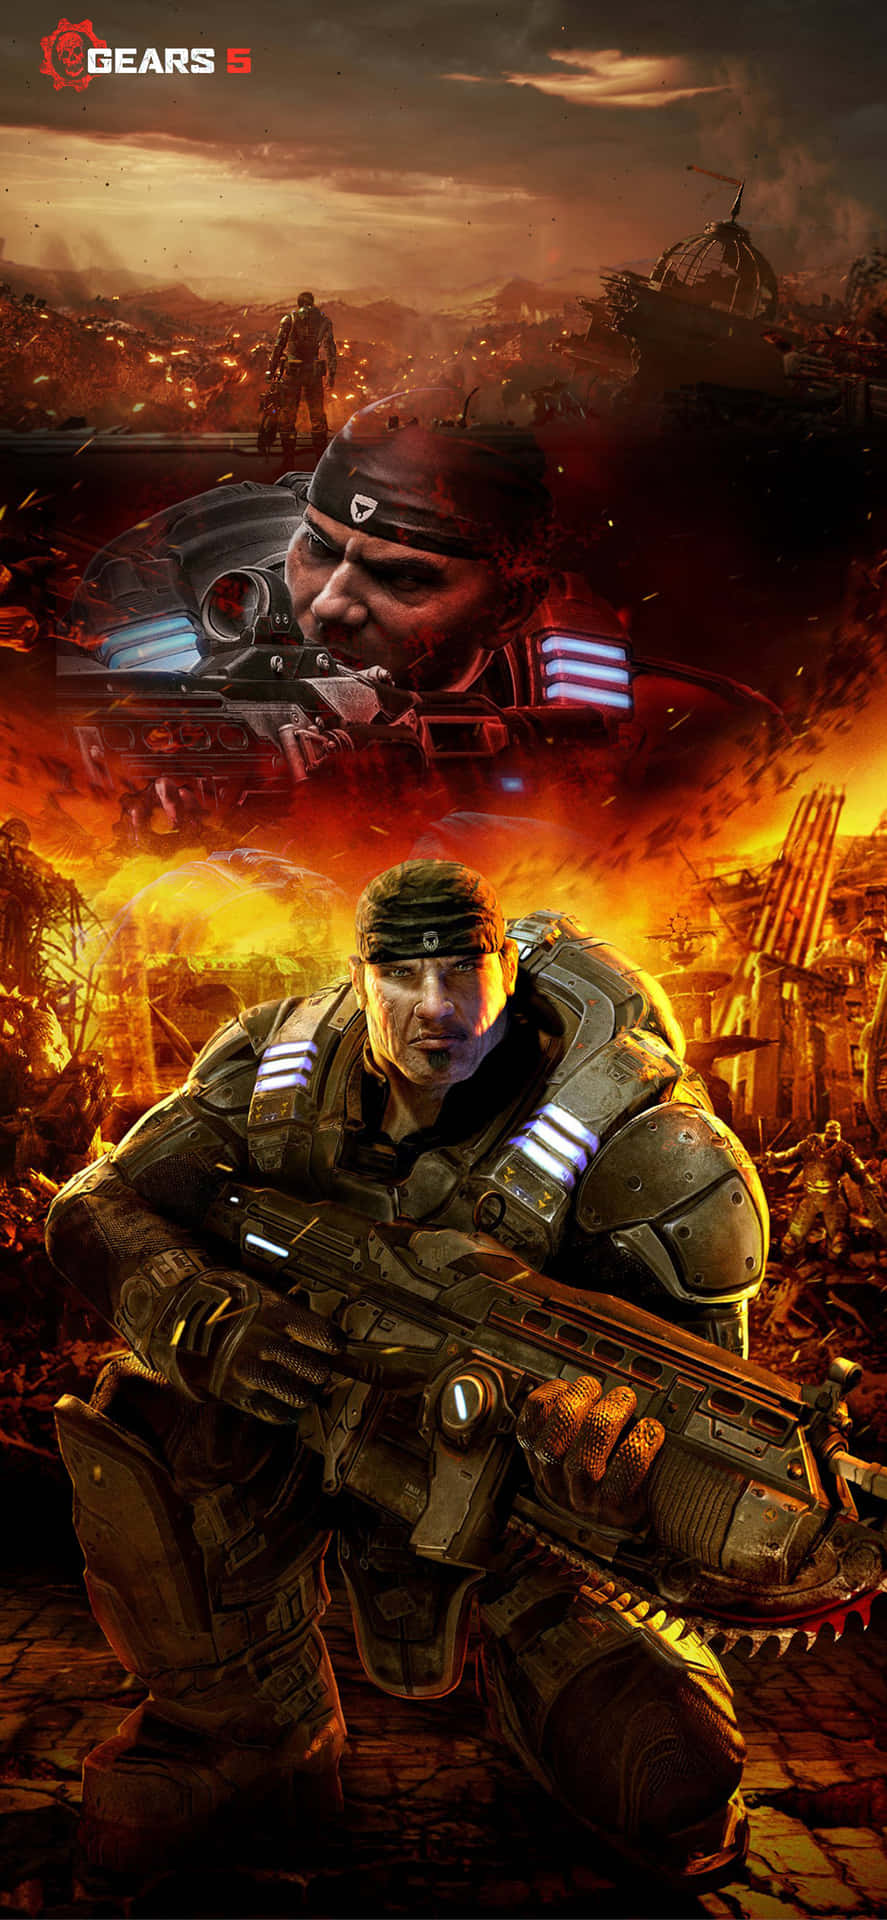 Titolosfondo Energetico Del Gioco Gears Of War 5 Per Iphone Xs Max